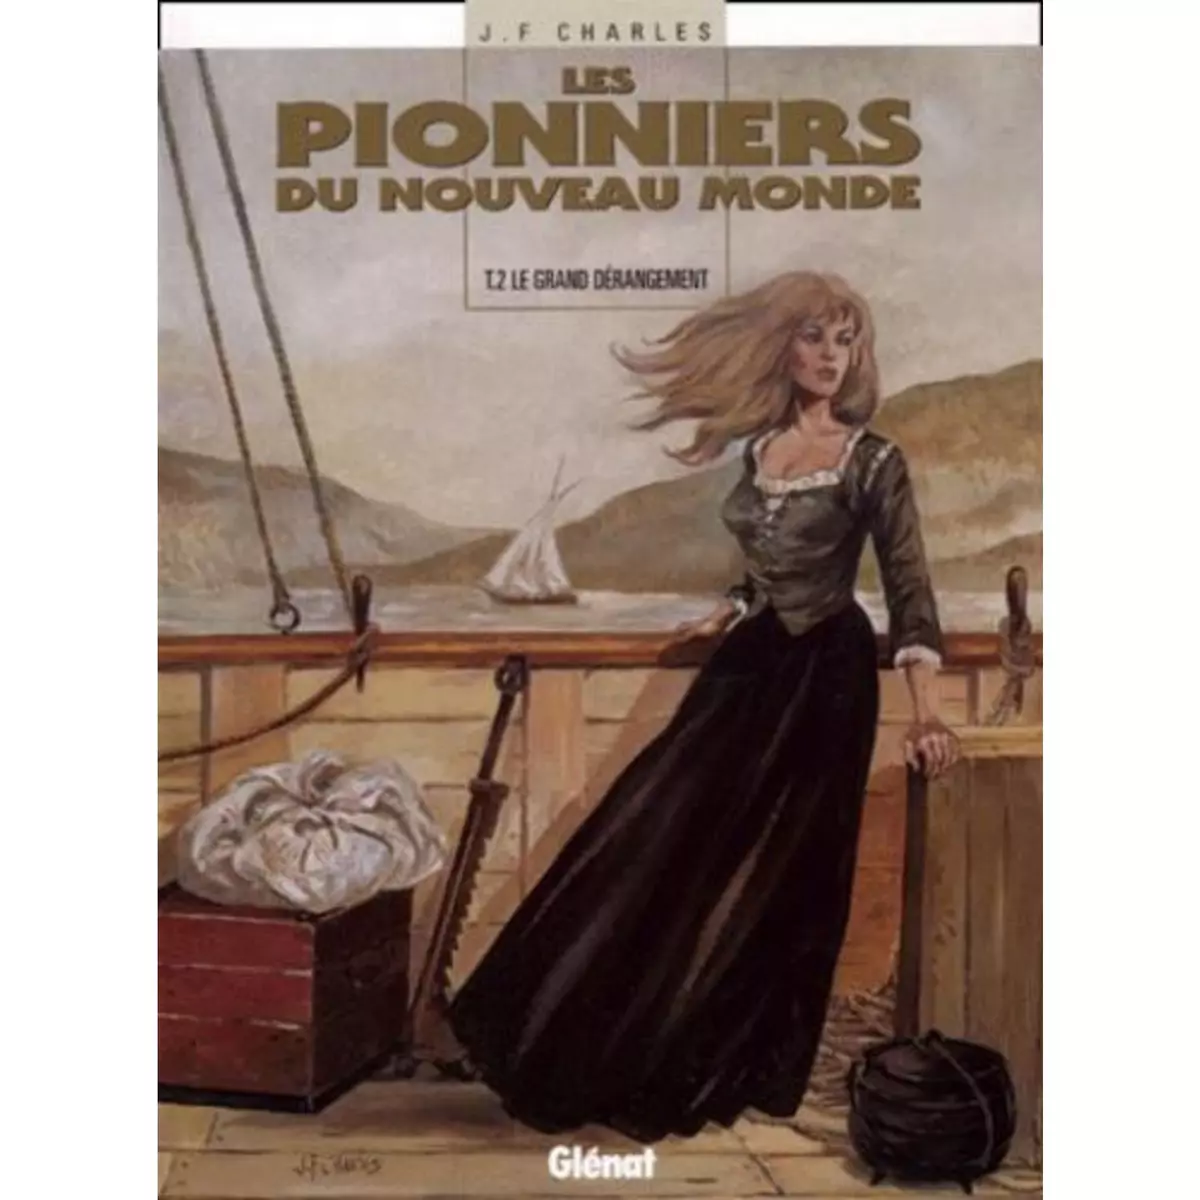  LES PIONNIERS DU NOUVEAU MONDE TOME 2 : LE GRAND DERANGEMENT, Charles Jean-François